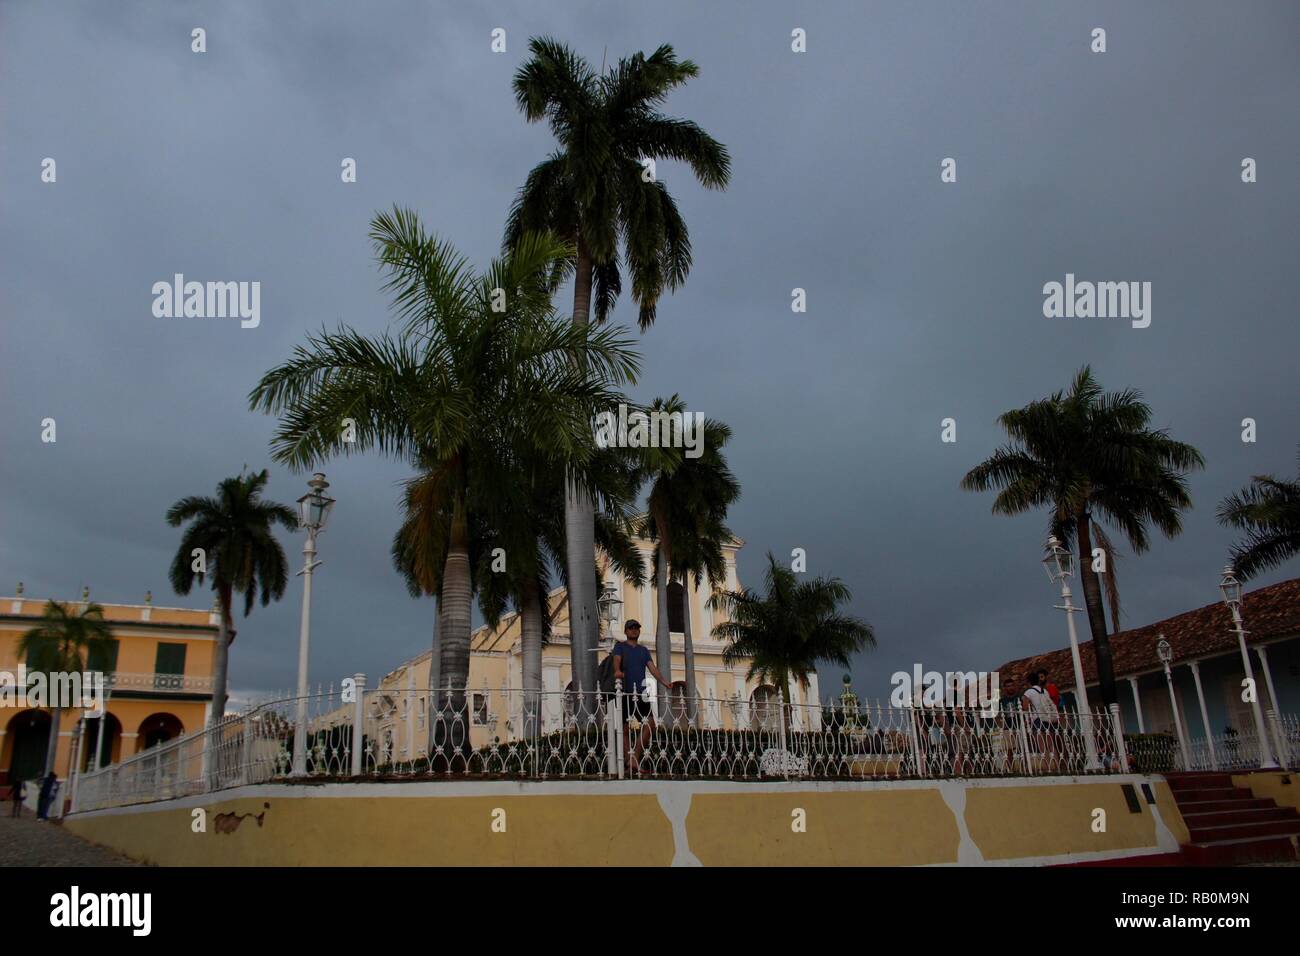 Storm brewing in Trinidad, Cuba Stock Photo